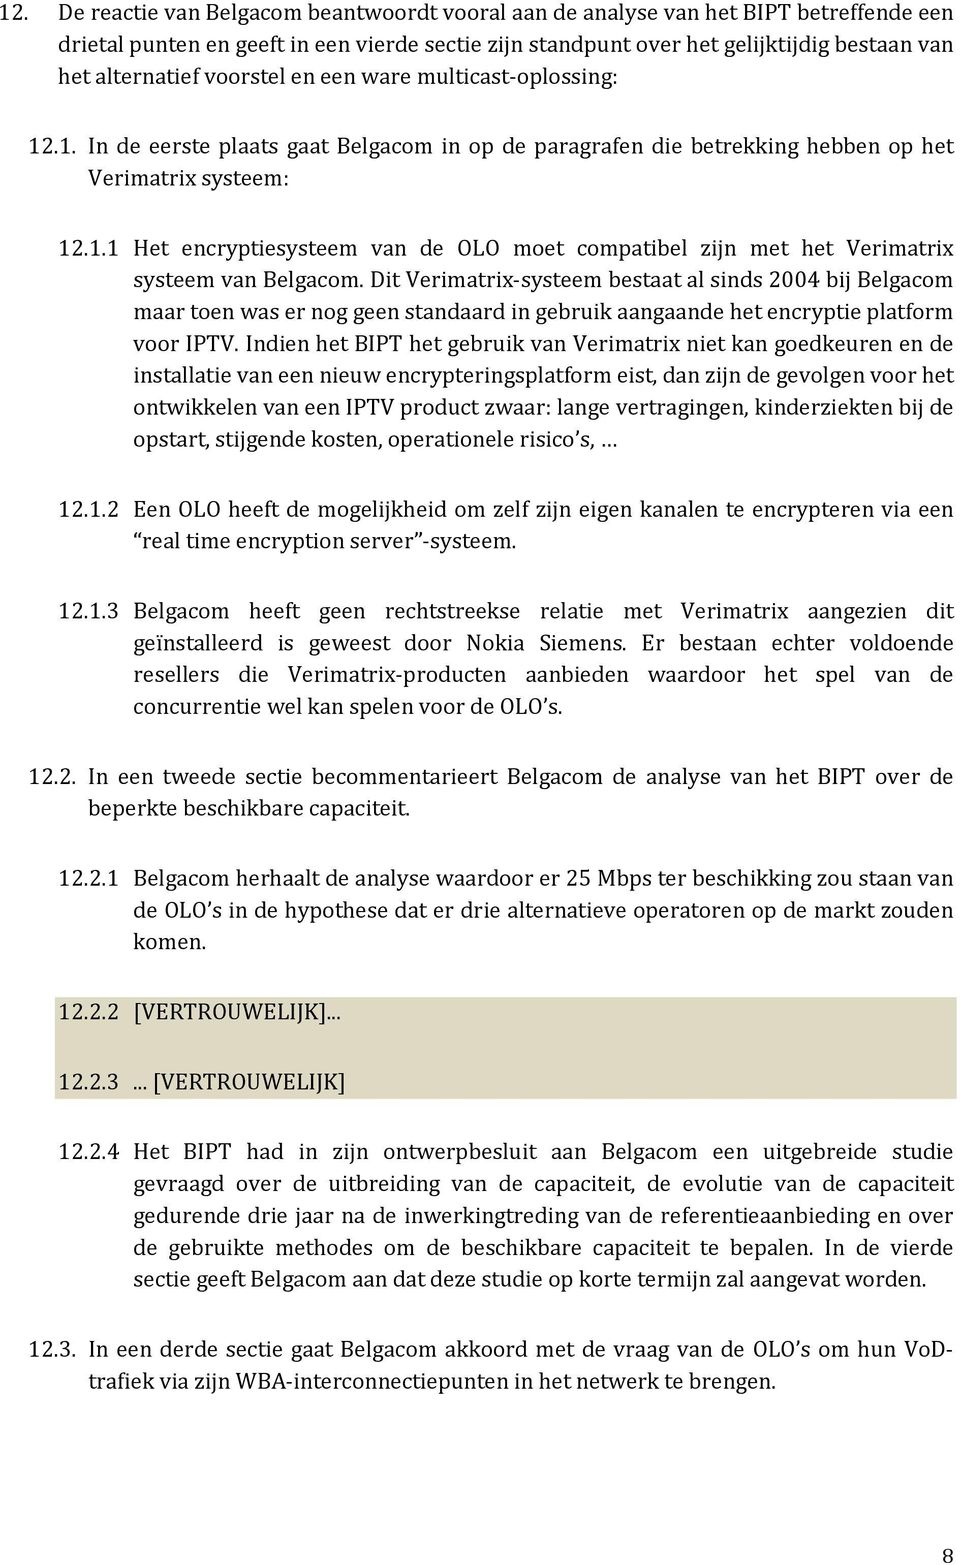 Dit Verimatrix-systeem bestaat al sinds 2004 bij Belgacom maar toen was er nog geen standaard in gebruik aangaande het encryptie platform voor IPTV.